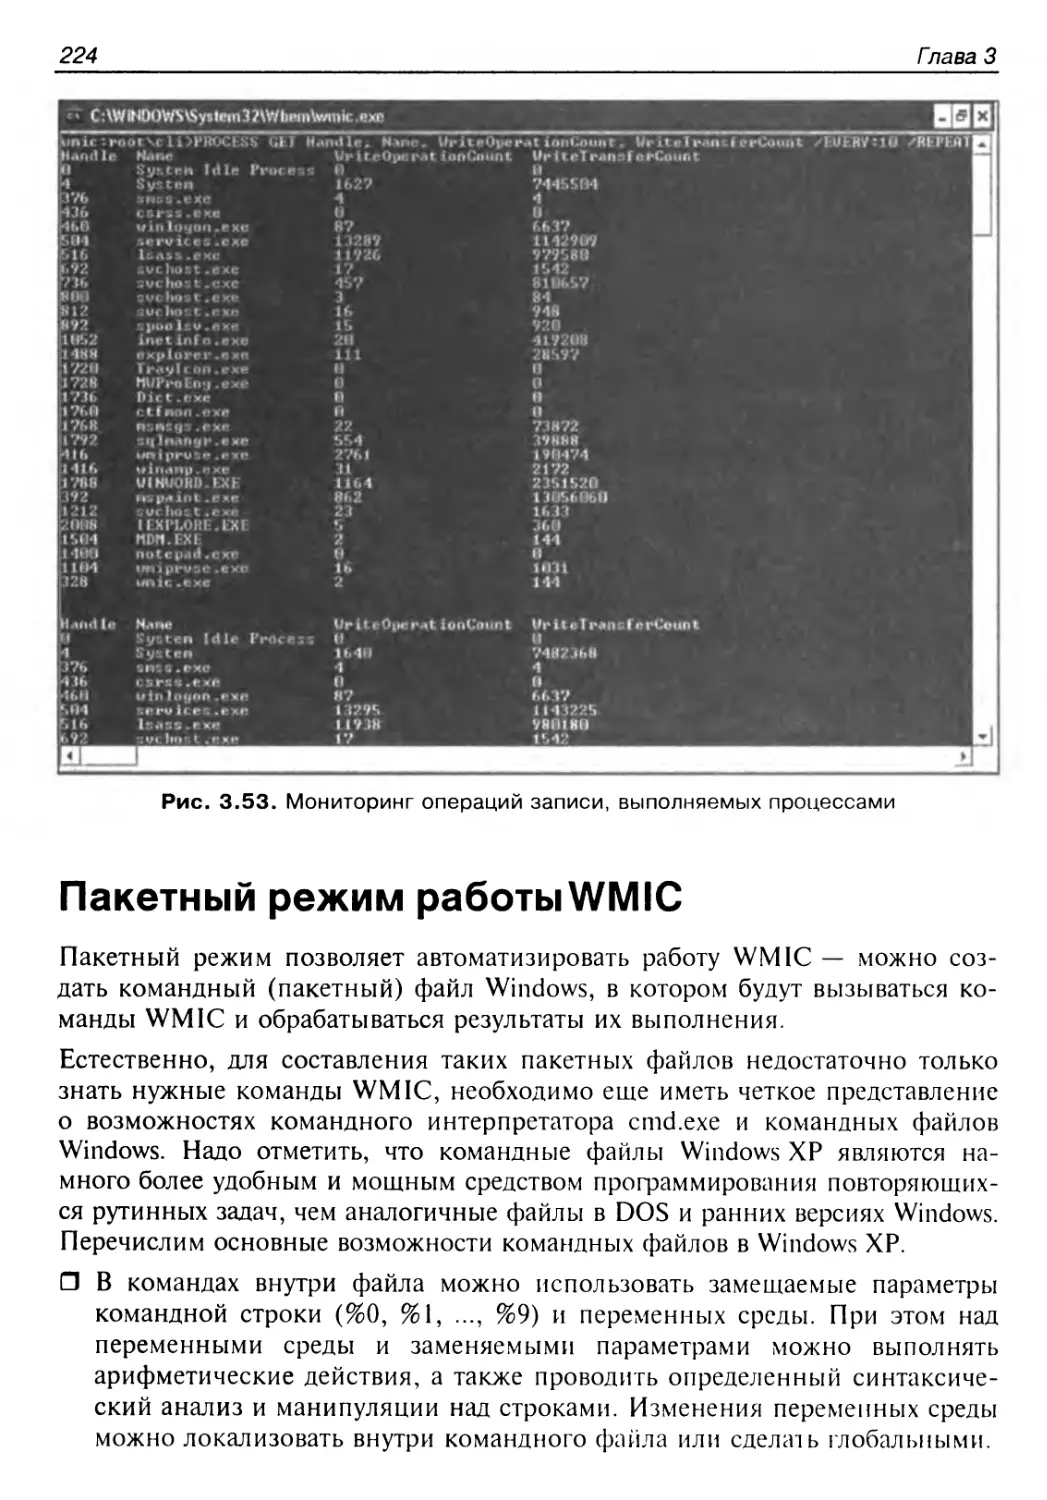 Пакетный режим работы WMIC